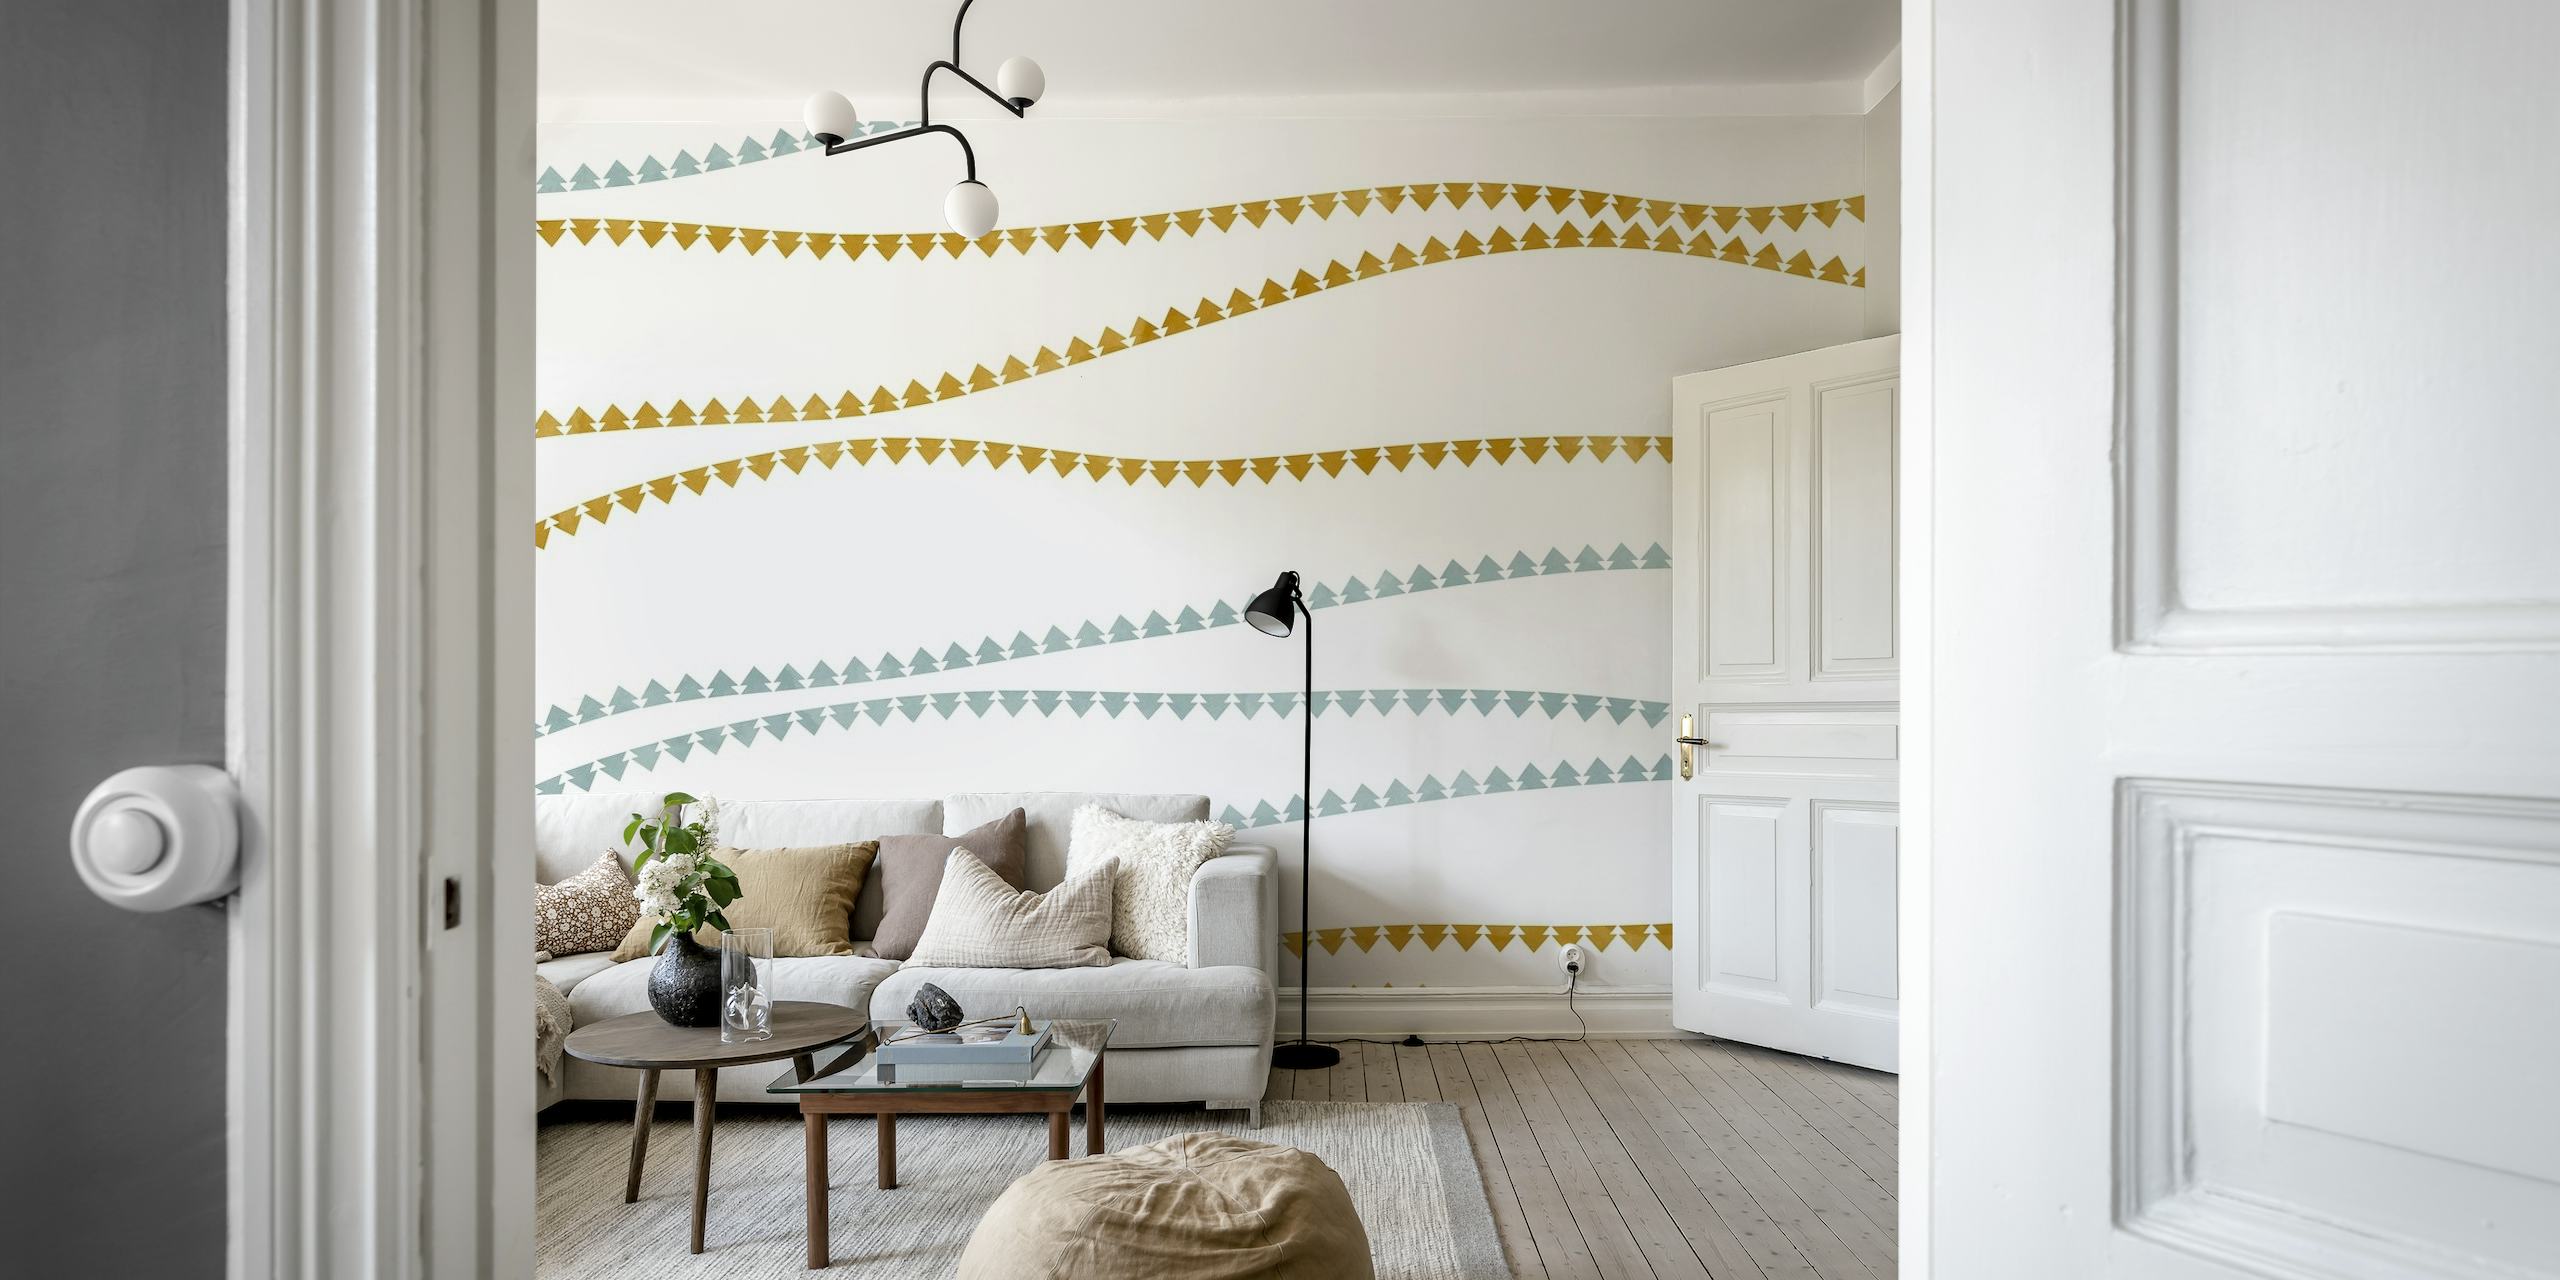 Mural de pared moderno abstracto con patrones de ondas de árboles dorados, plateados y blancos